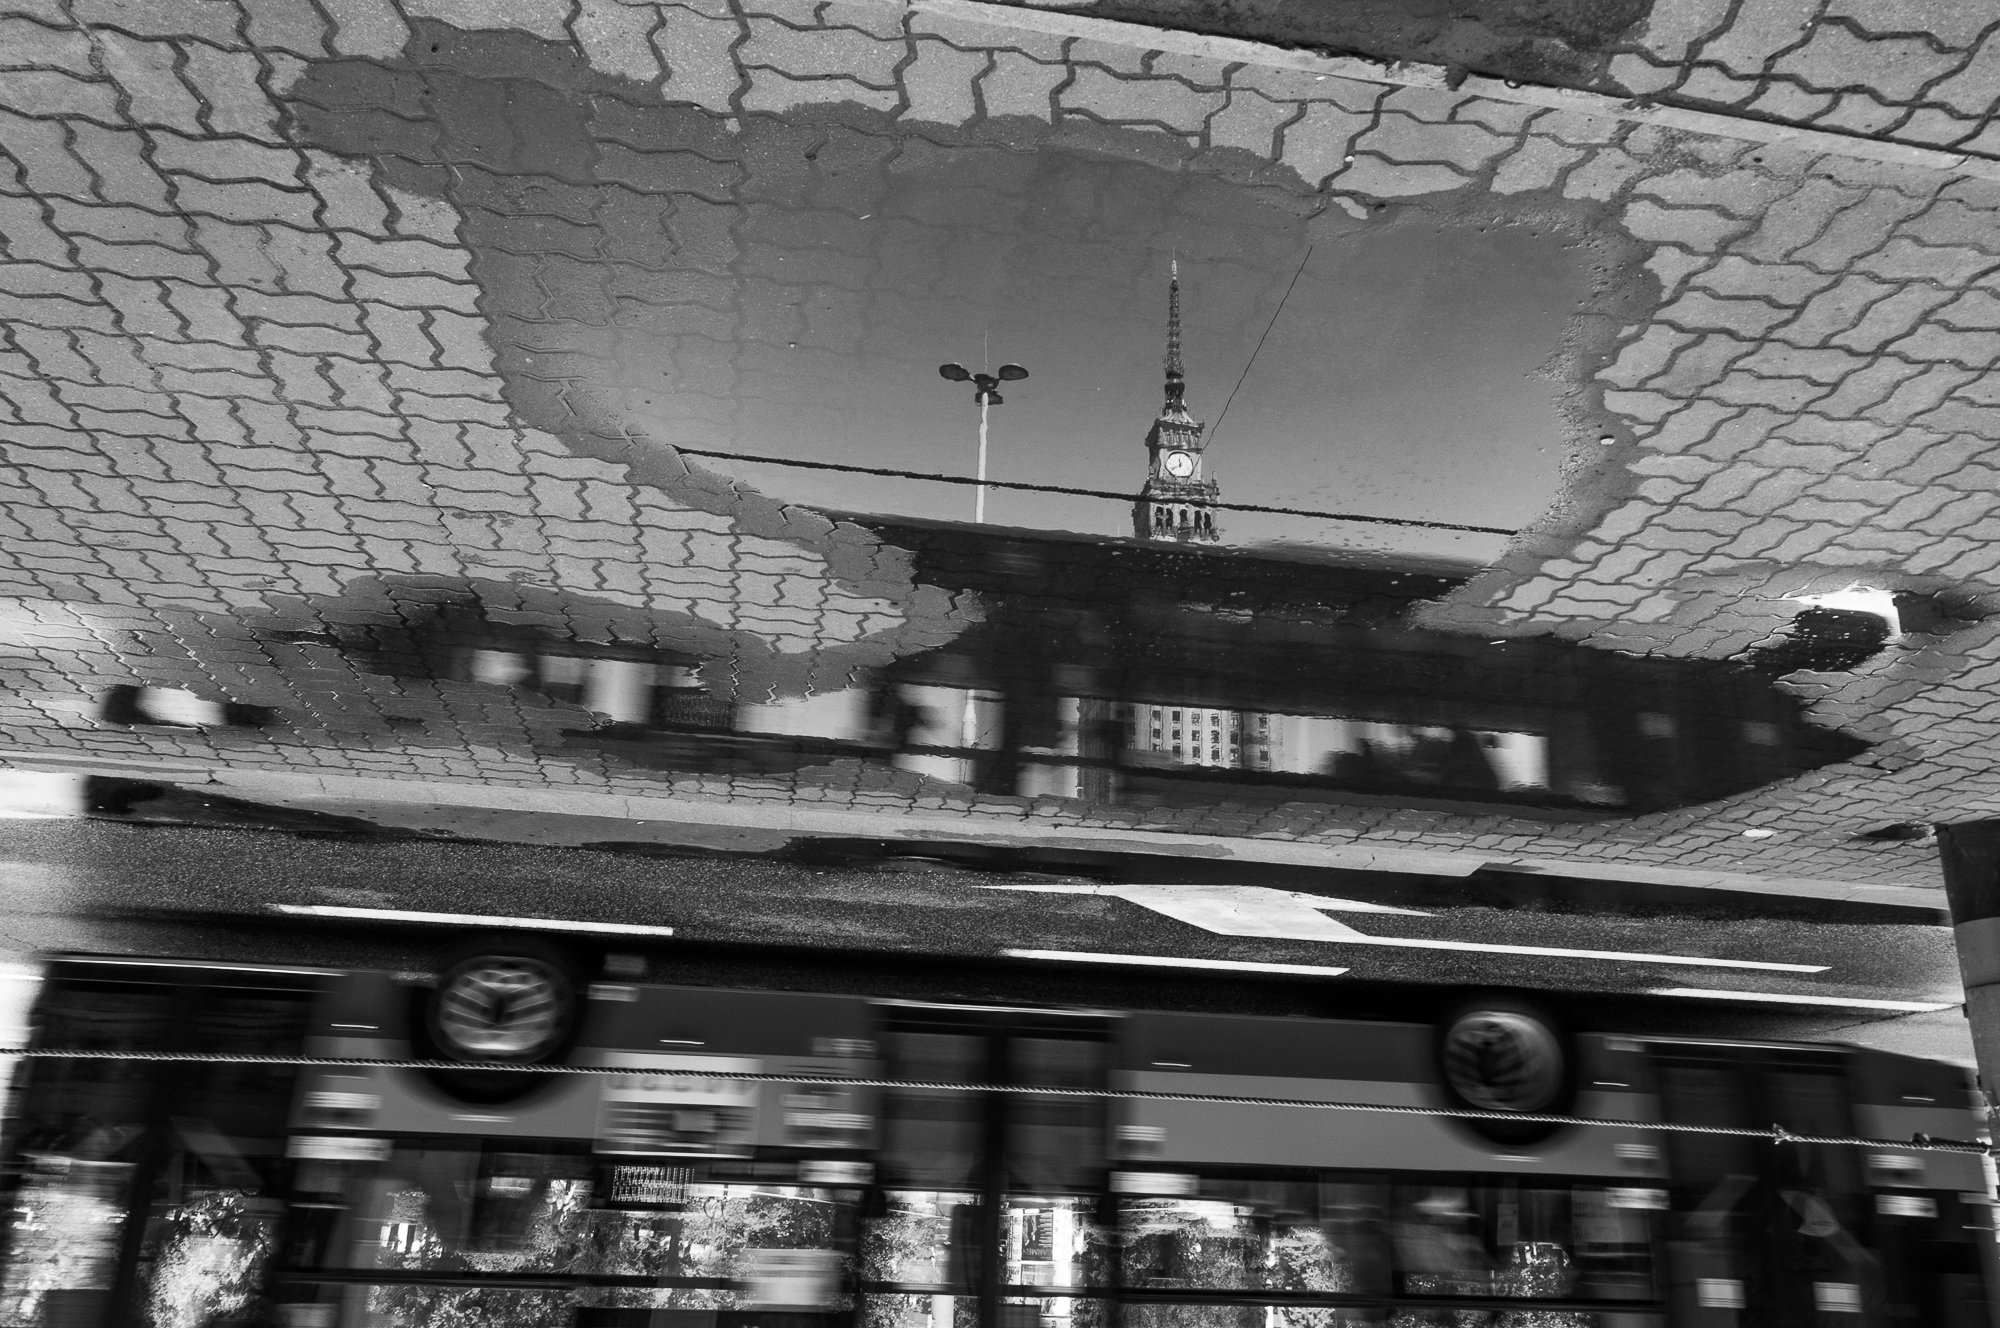 Adam Mazek Photography Warsaw (Warszawa) 2016. Post: "Transportation." Minimalism. Bus. Palace of Culture and Science.